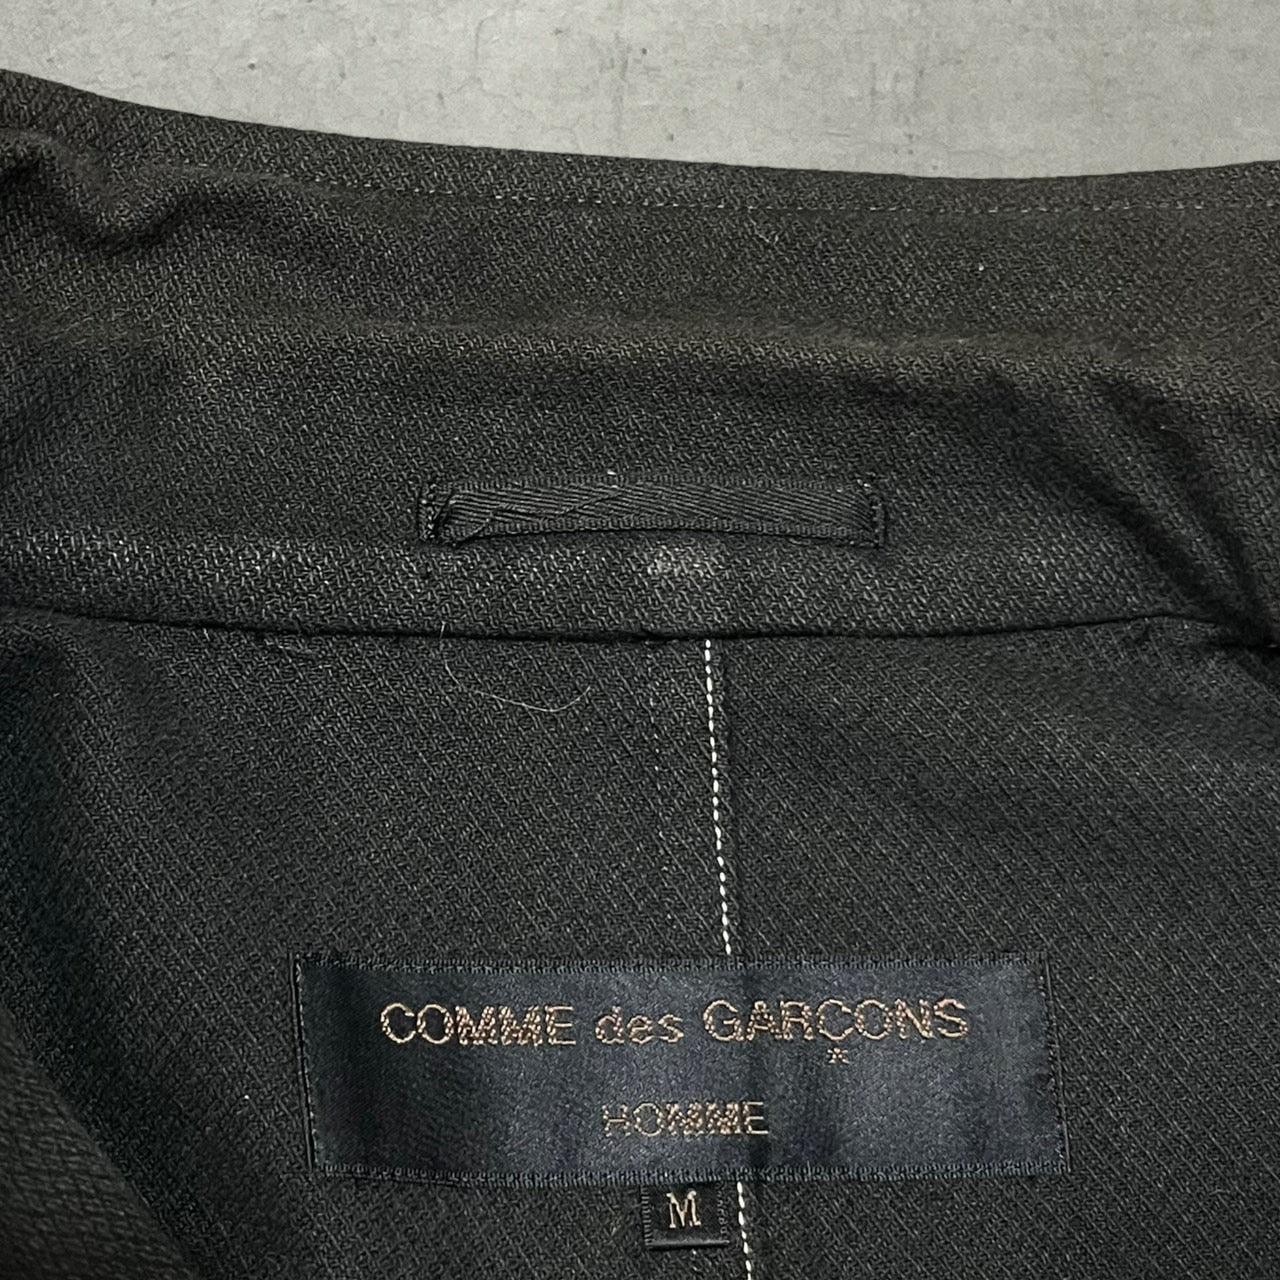 COMME des GARCONS HOMME(コムデギャルソンオム) 98AW  white stitch tailored jacket/ホワイトステッチテーラードジャケット/田中啓一/90S/90年代/ヴィンテージ HJ-04018M SIZE M ブラック×ホワイト AD1998 田中オム